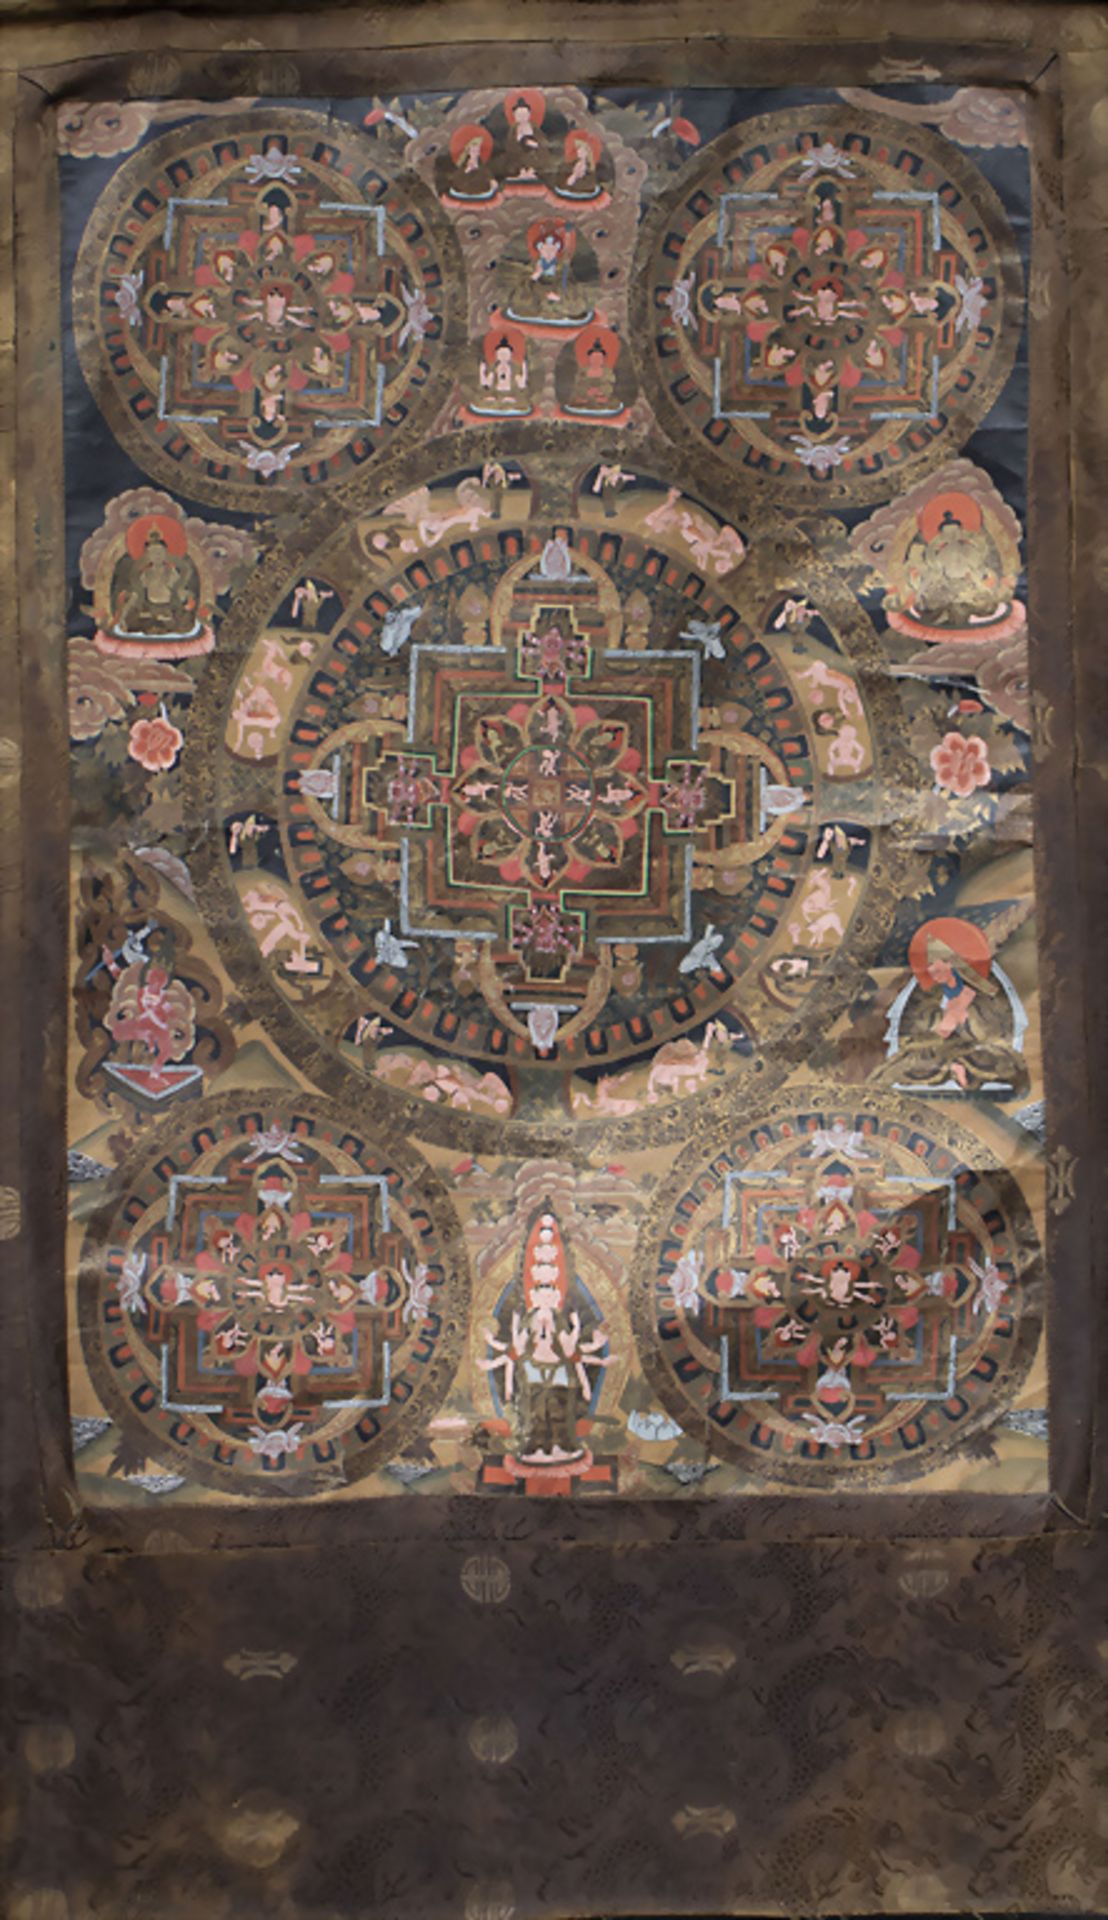 Tangka mit Himmels- und Höllenkreisen / A tangka with circles of heaven and hell, Tibet, 19. Jh.